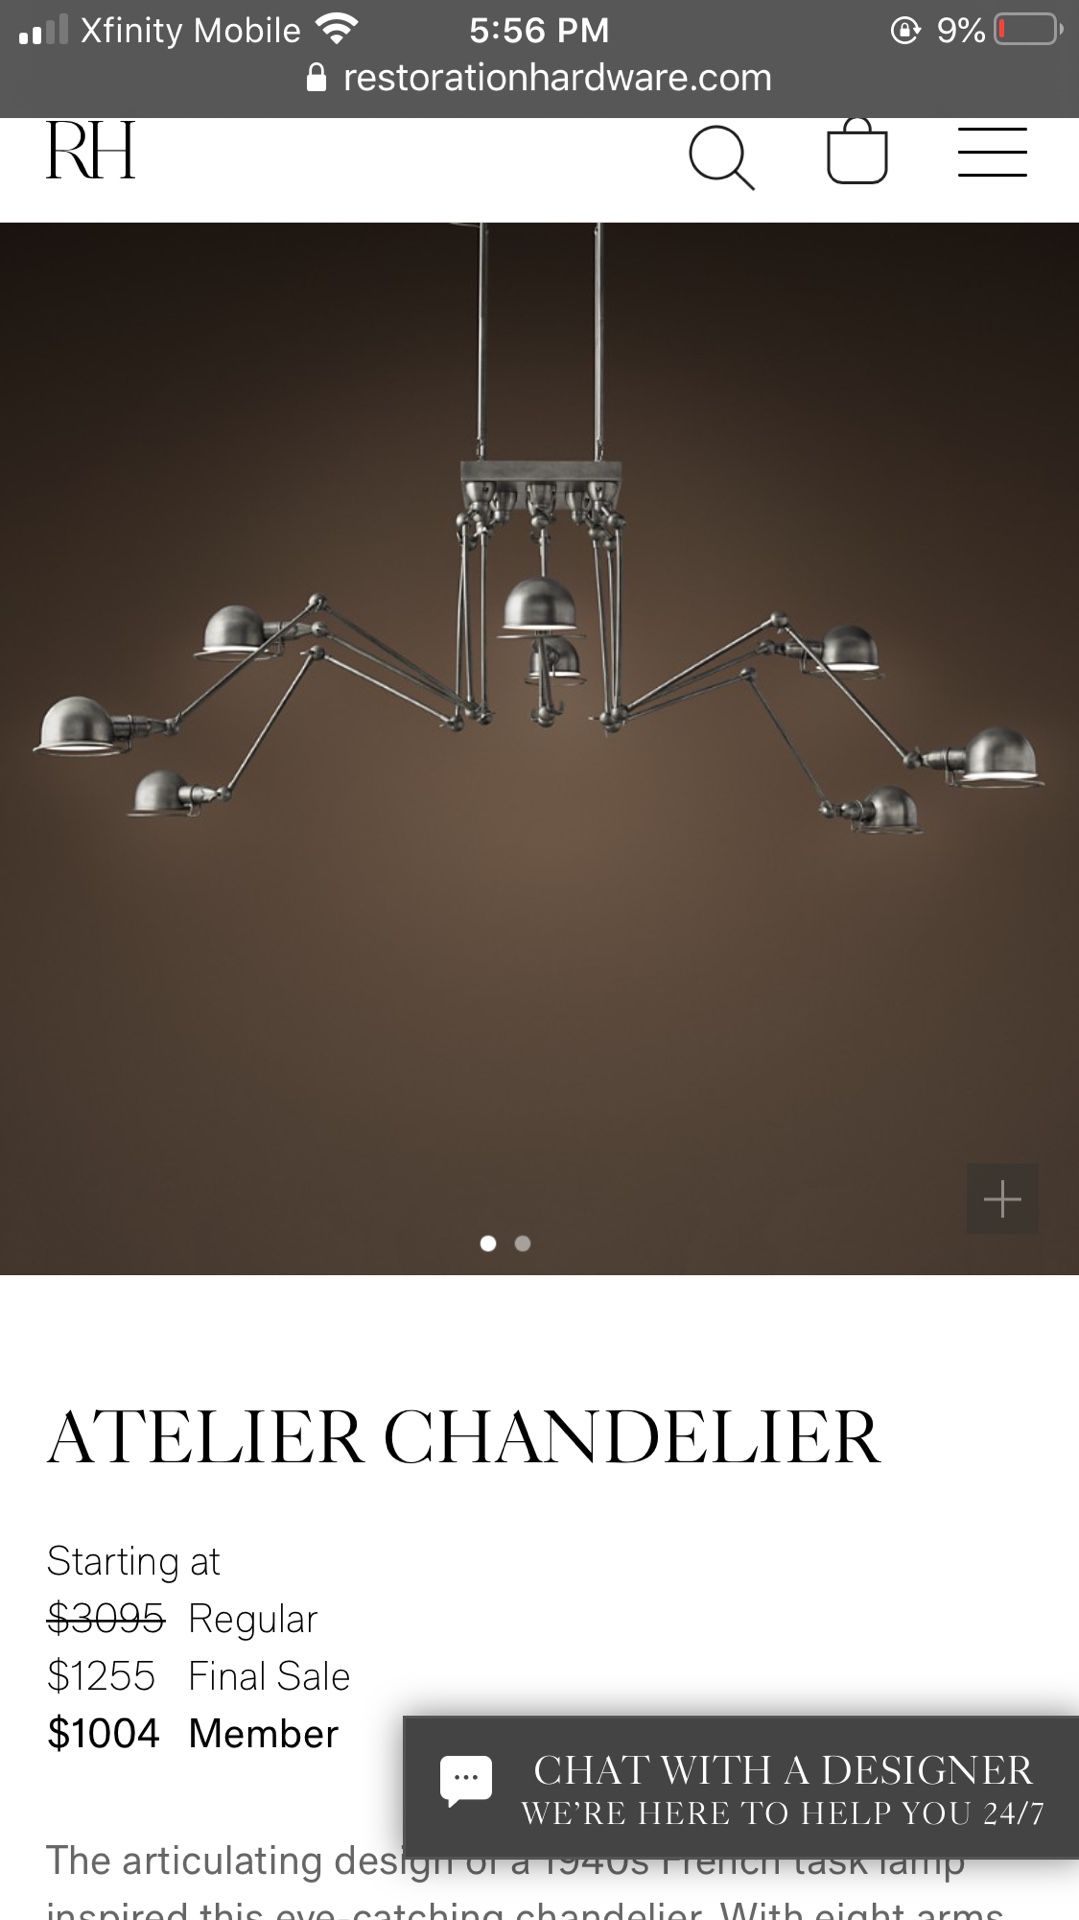 Restoration Hardware Antelier Chandelier